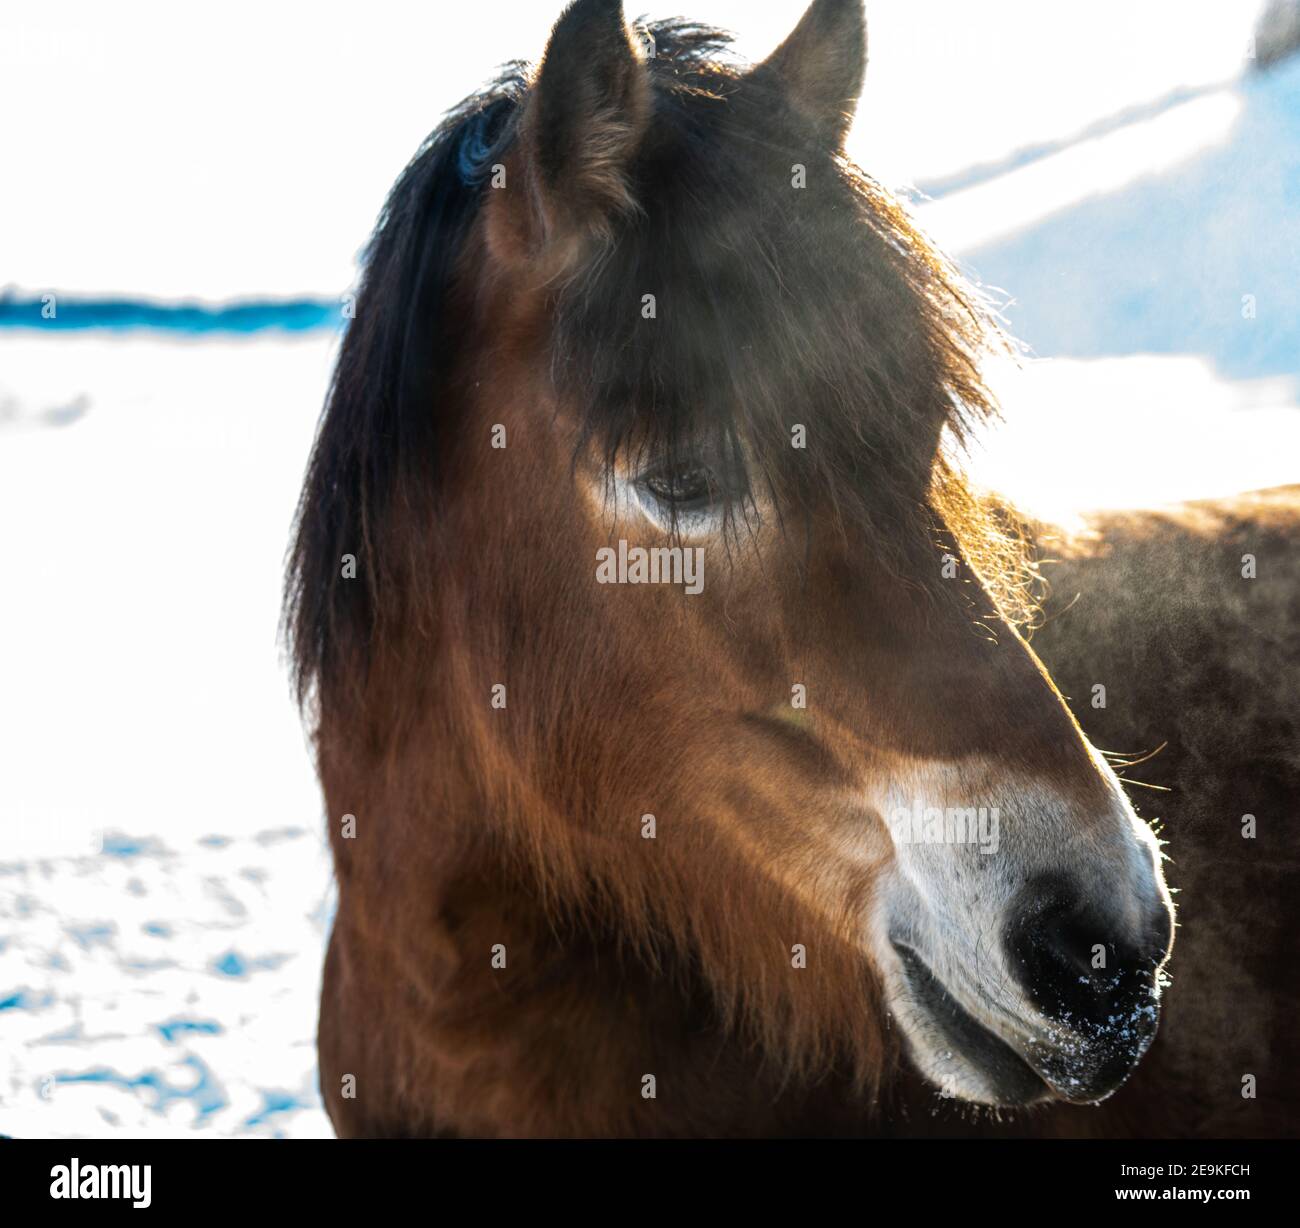 Retrato de un caballo con el primer plano de la cabeza sobre un fondo nevado de invierno. Foto de stock